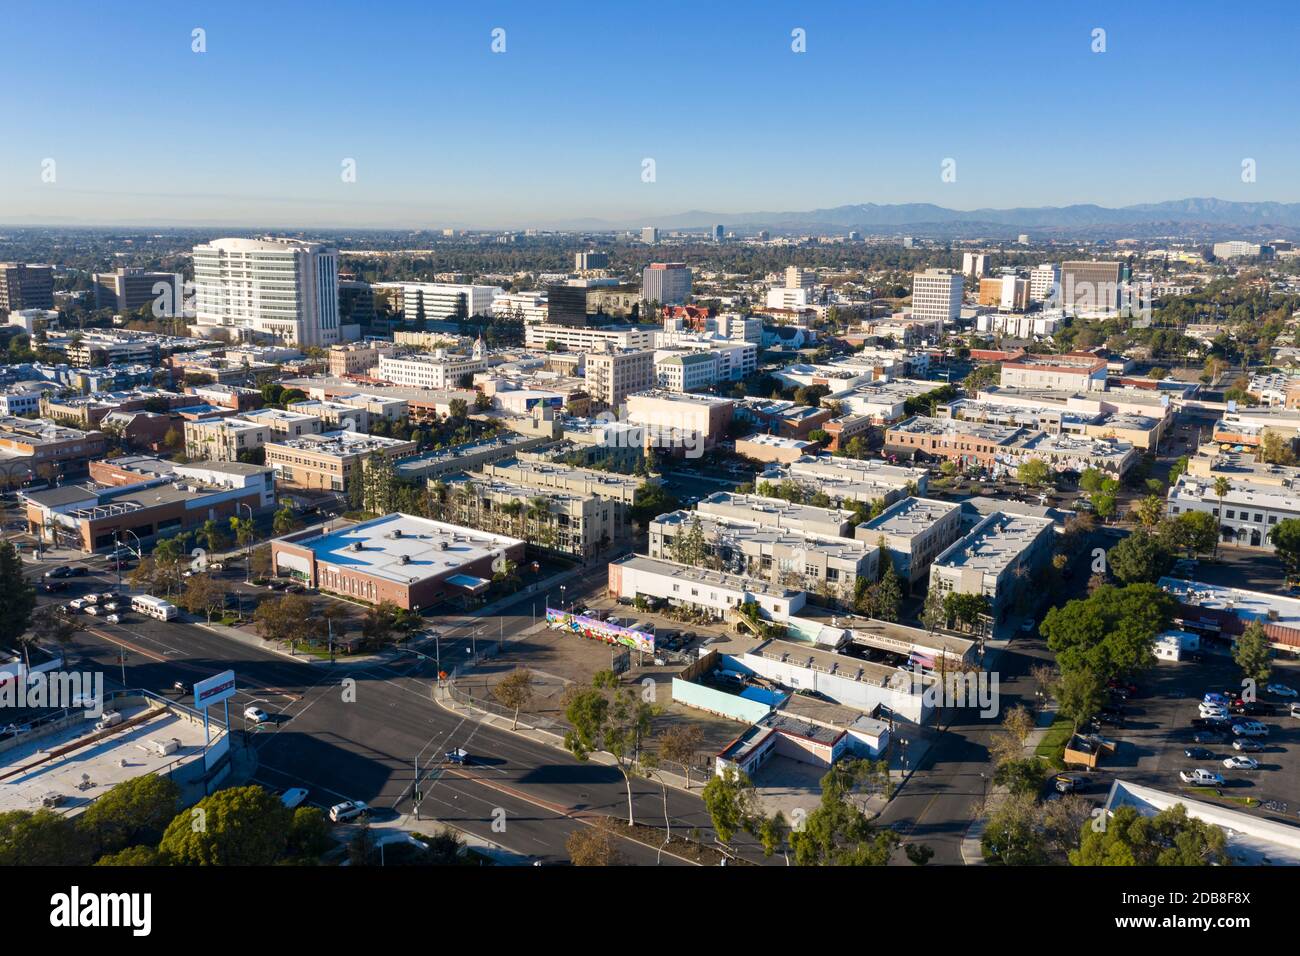 Vista aerea del centro di Santa Ana, California, inclusa la Federal edificio del tribunale Foto Stock